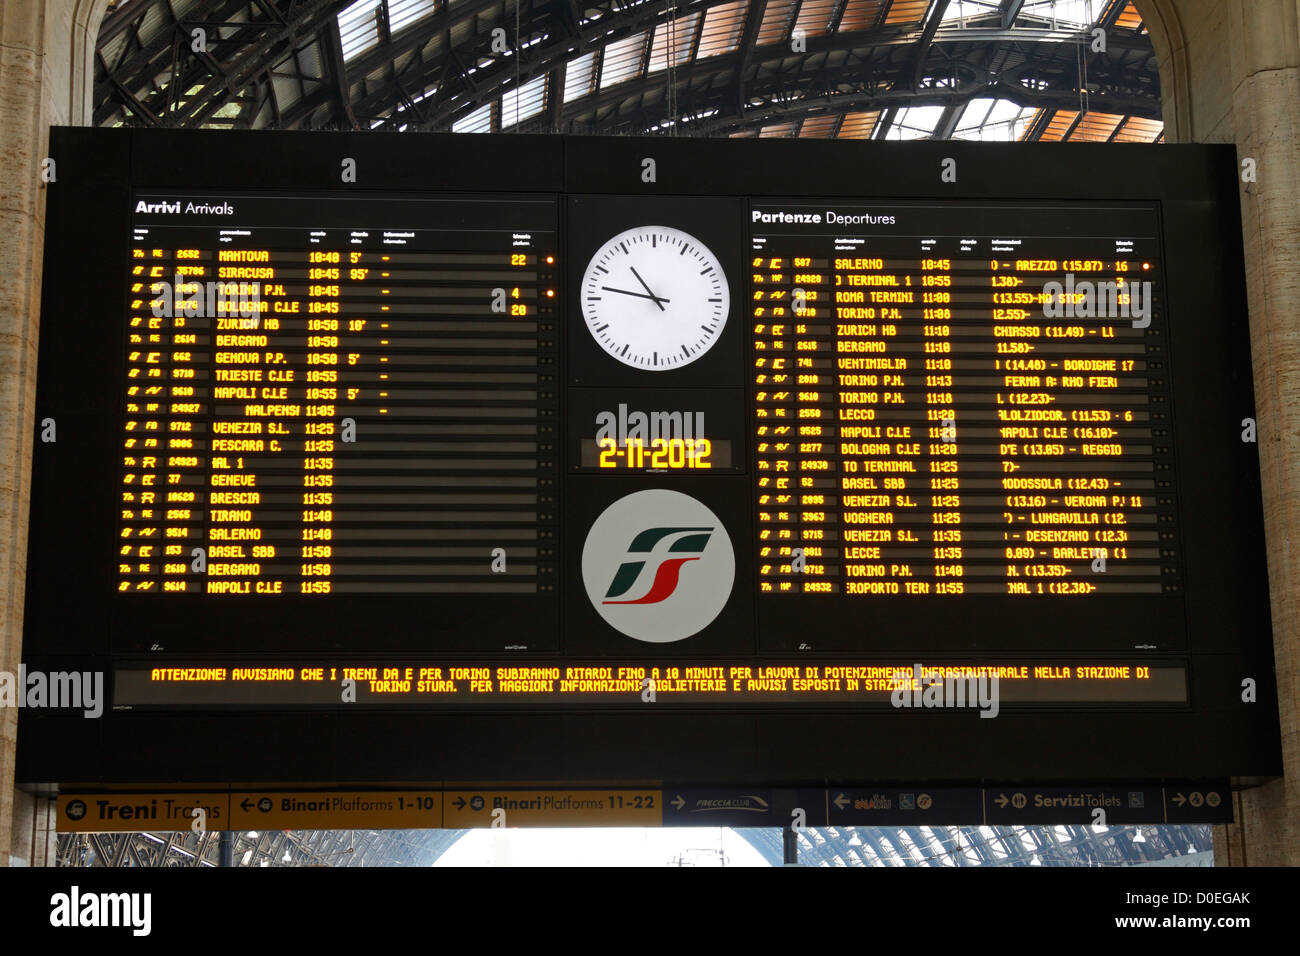 La Stazione Ferroviaria di Milano centrale elettronica di partenze e arrivi  bordo, Italia, Europa Foto stock - Alamy